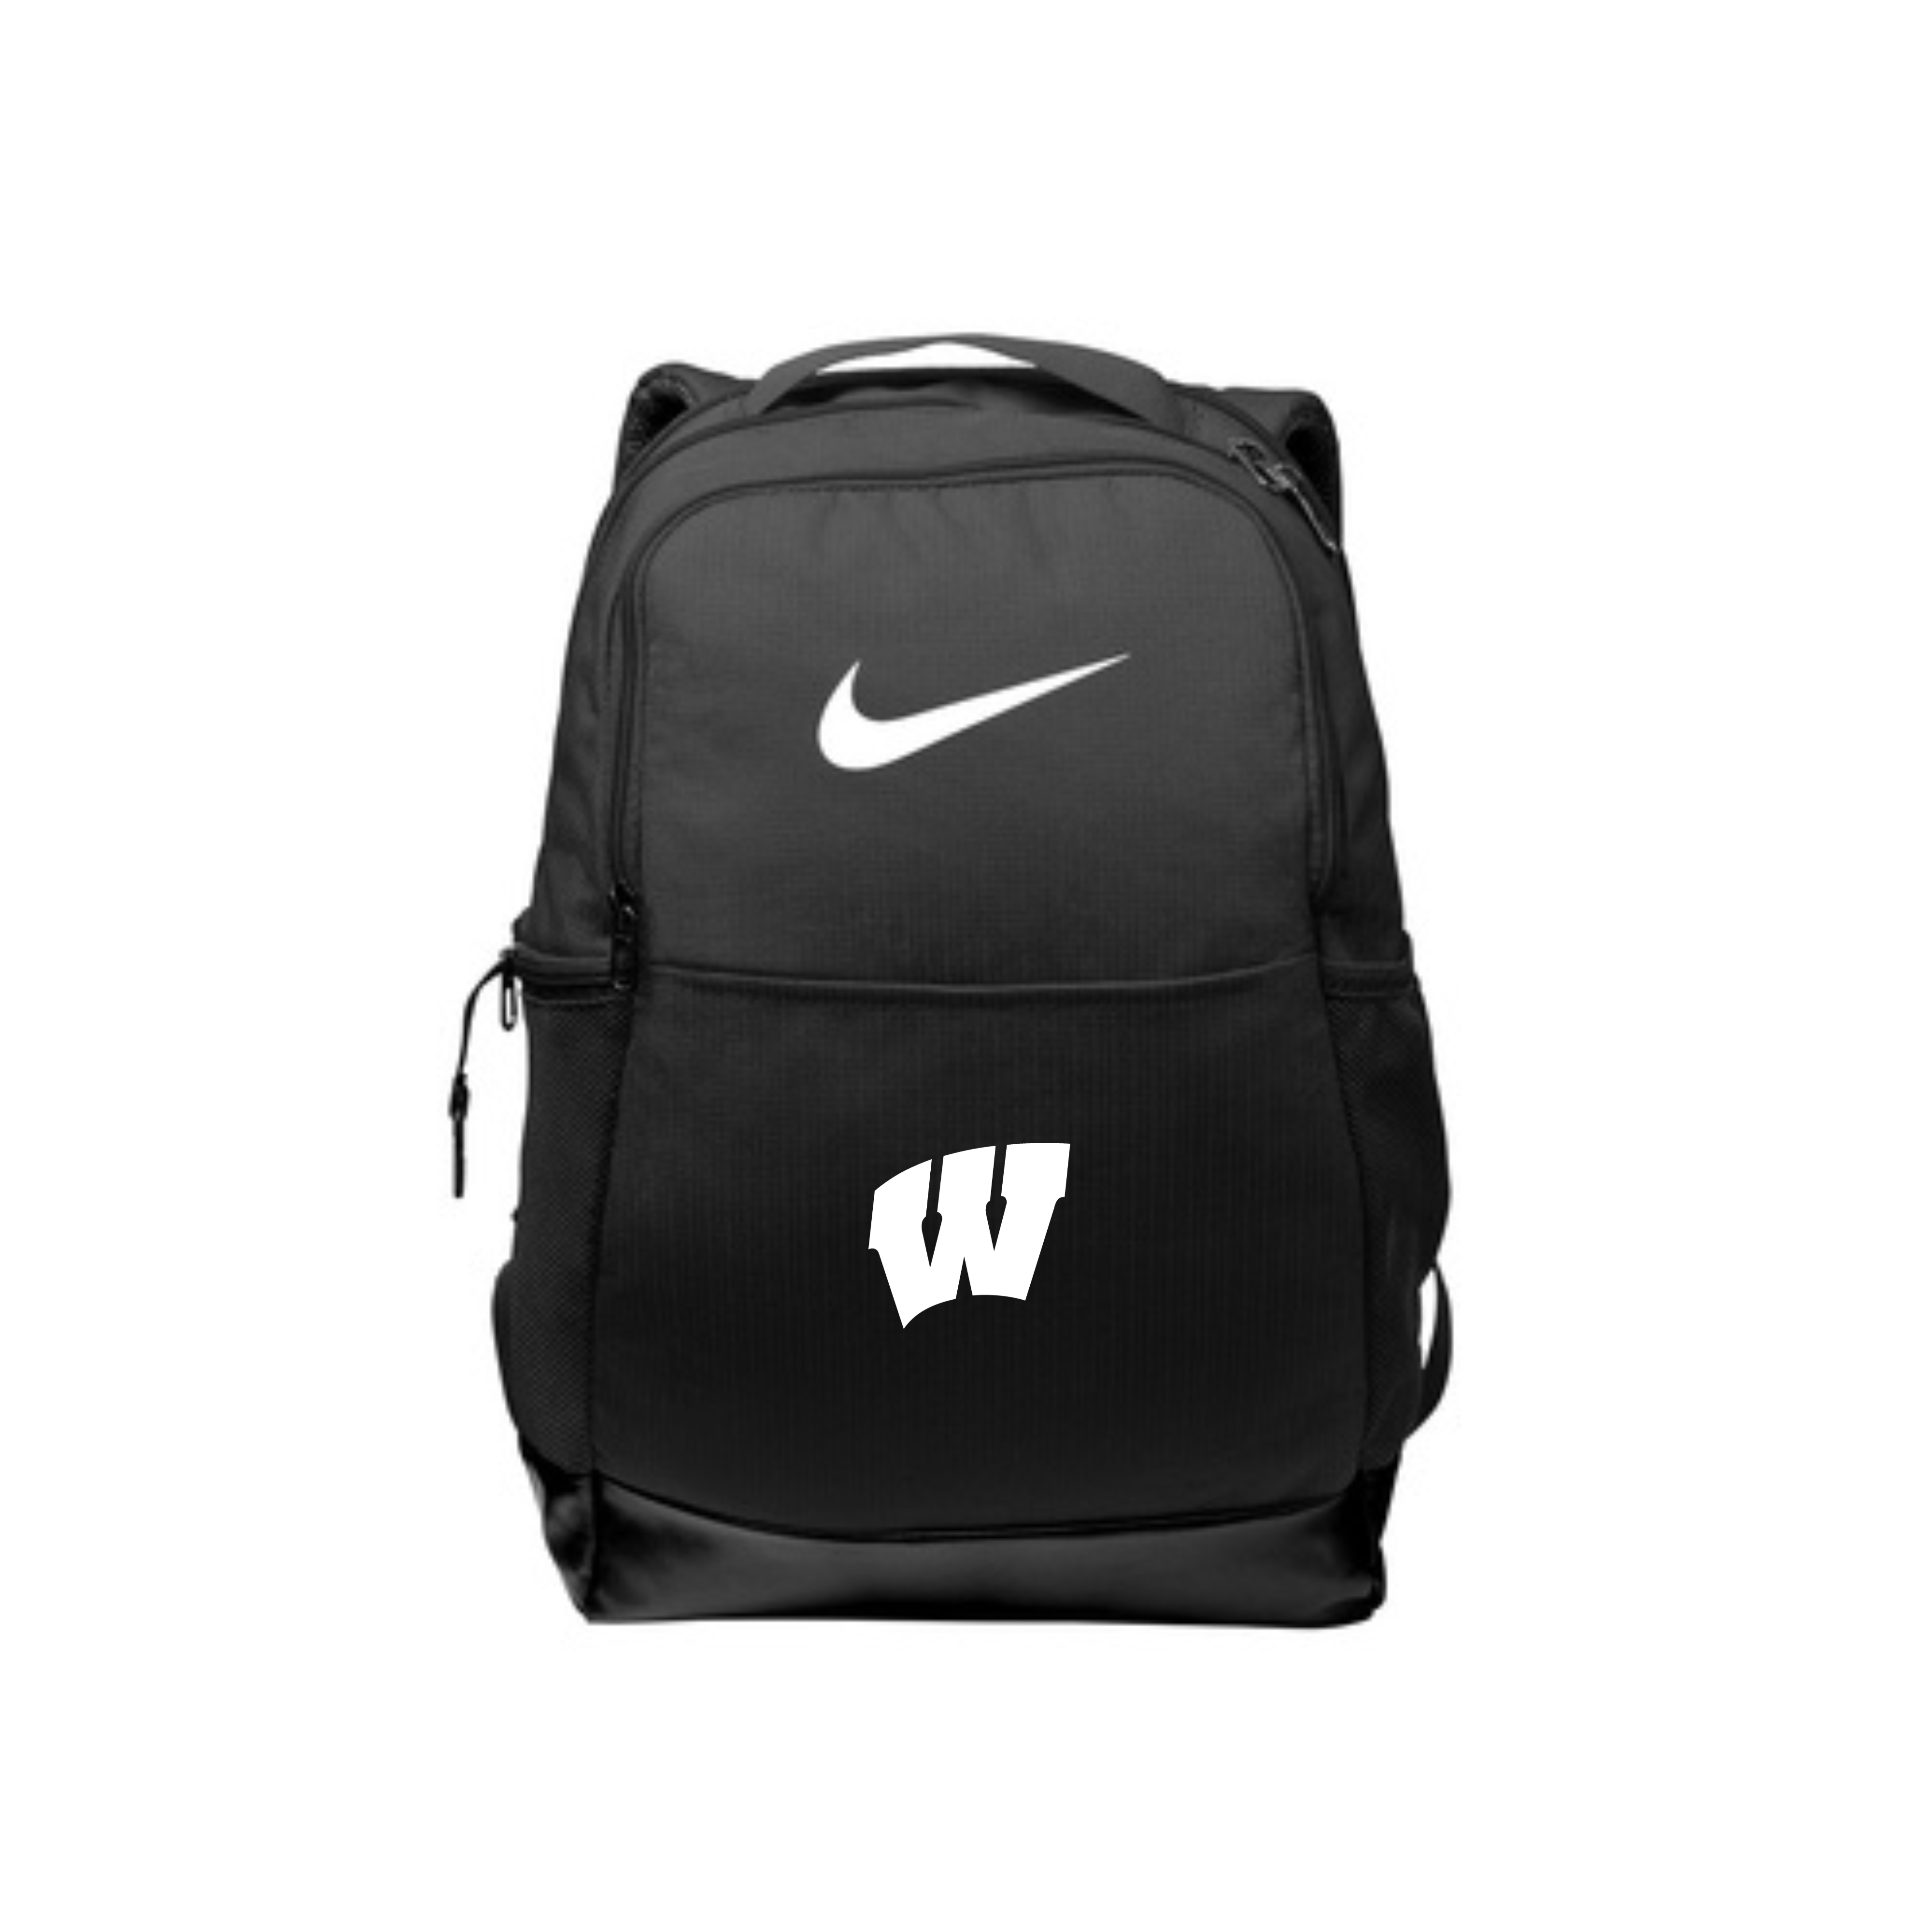 Nike wilson soccer backpack- NKDH7709